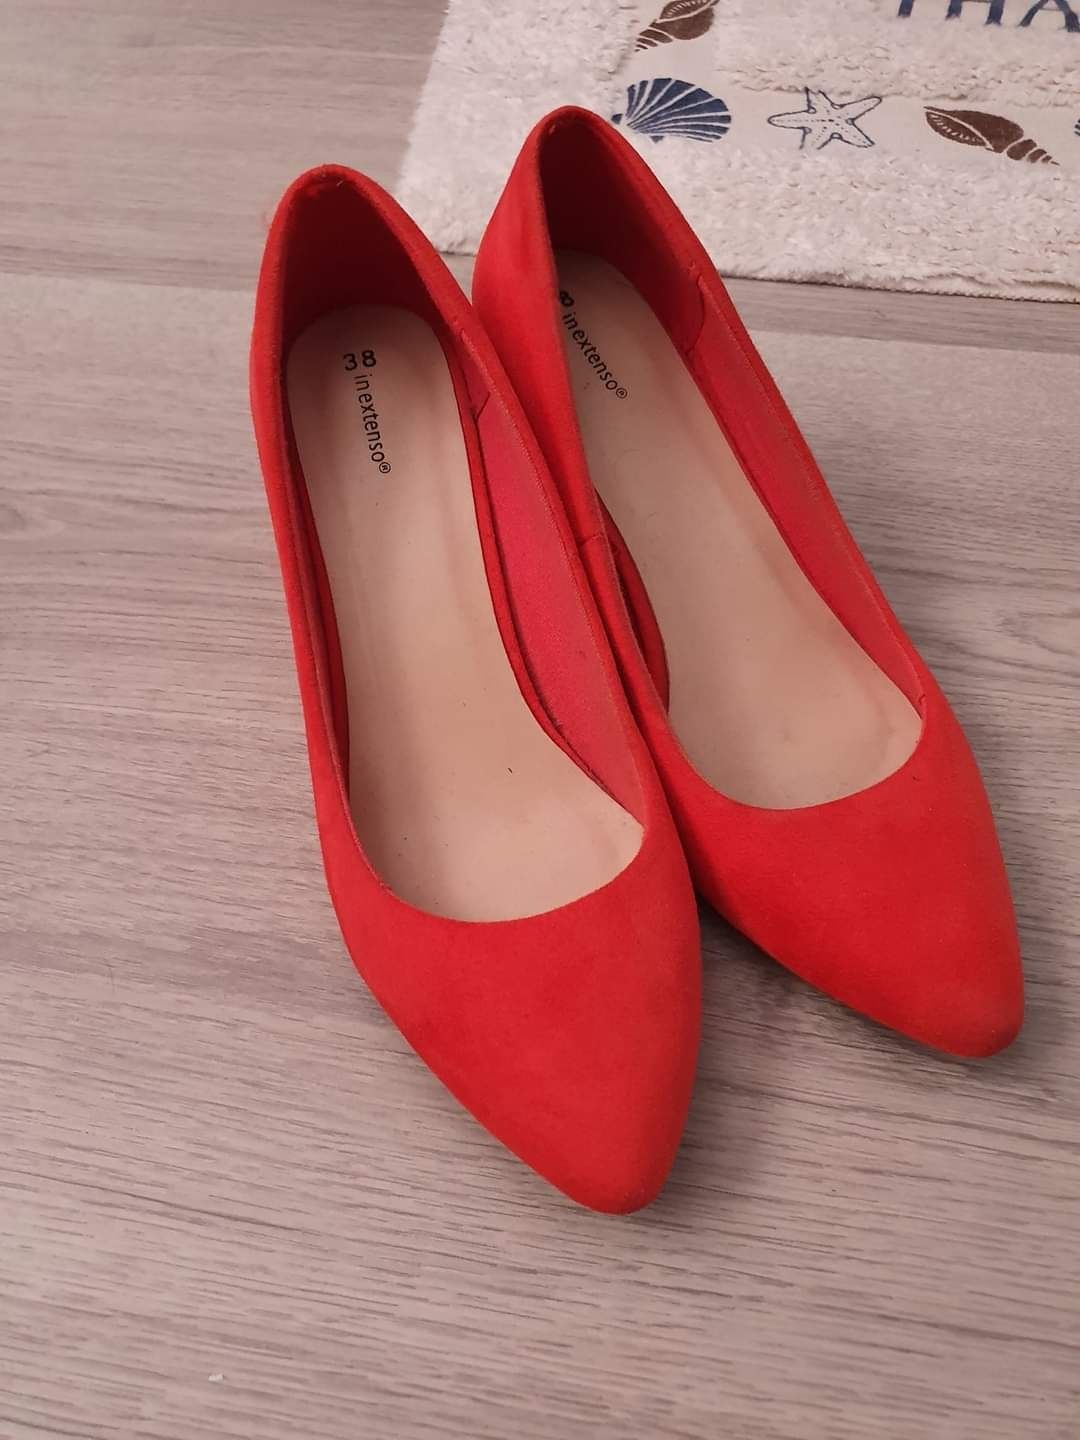 Pantofi roși din piele intoarsa mărimea 38